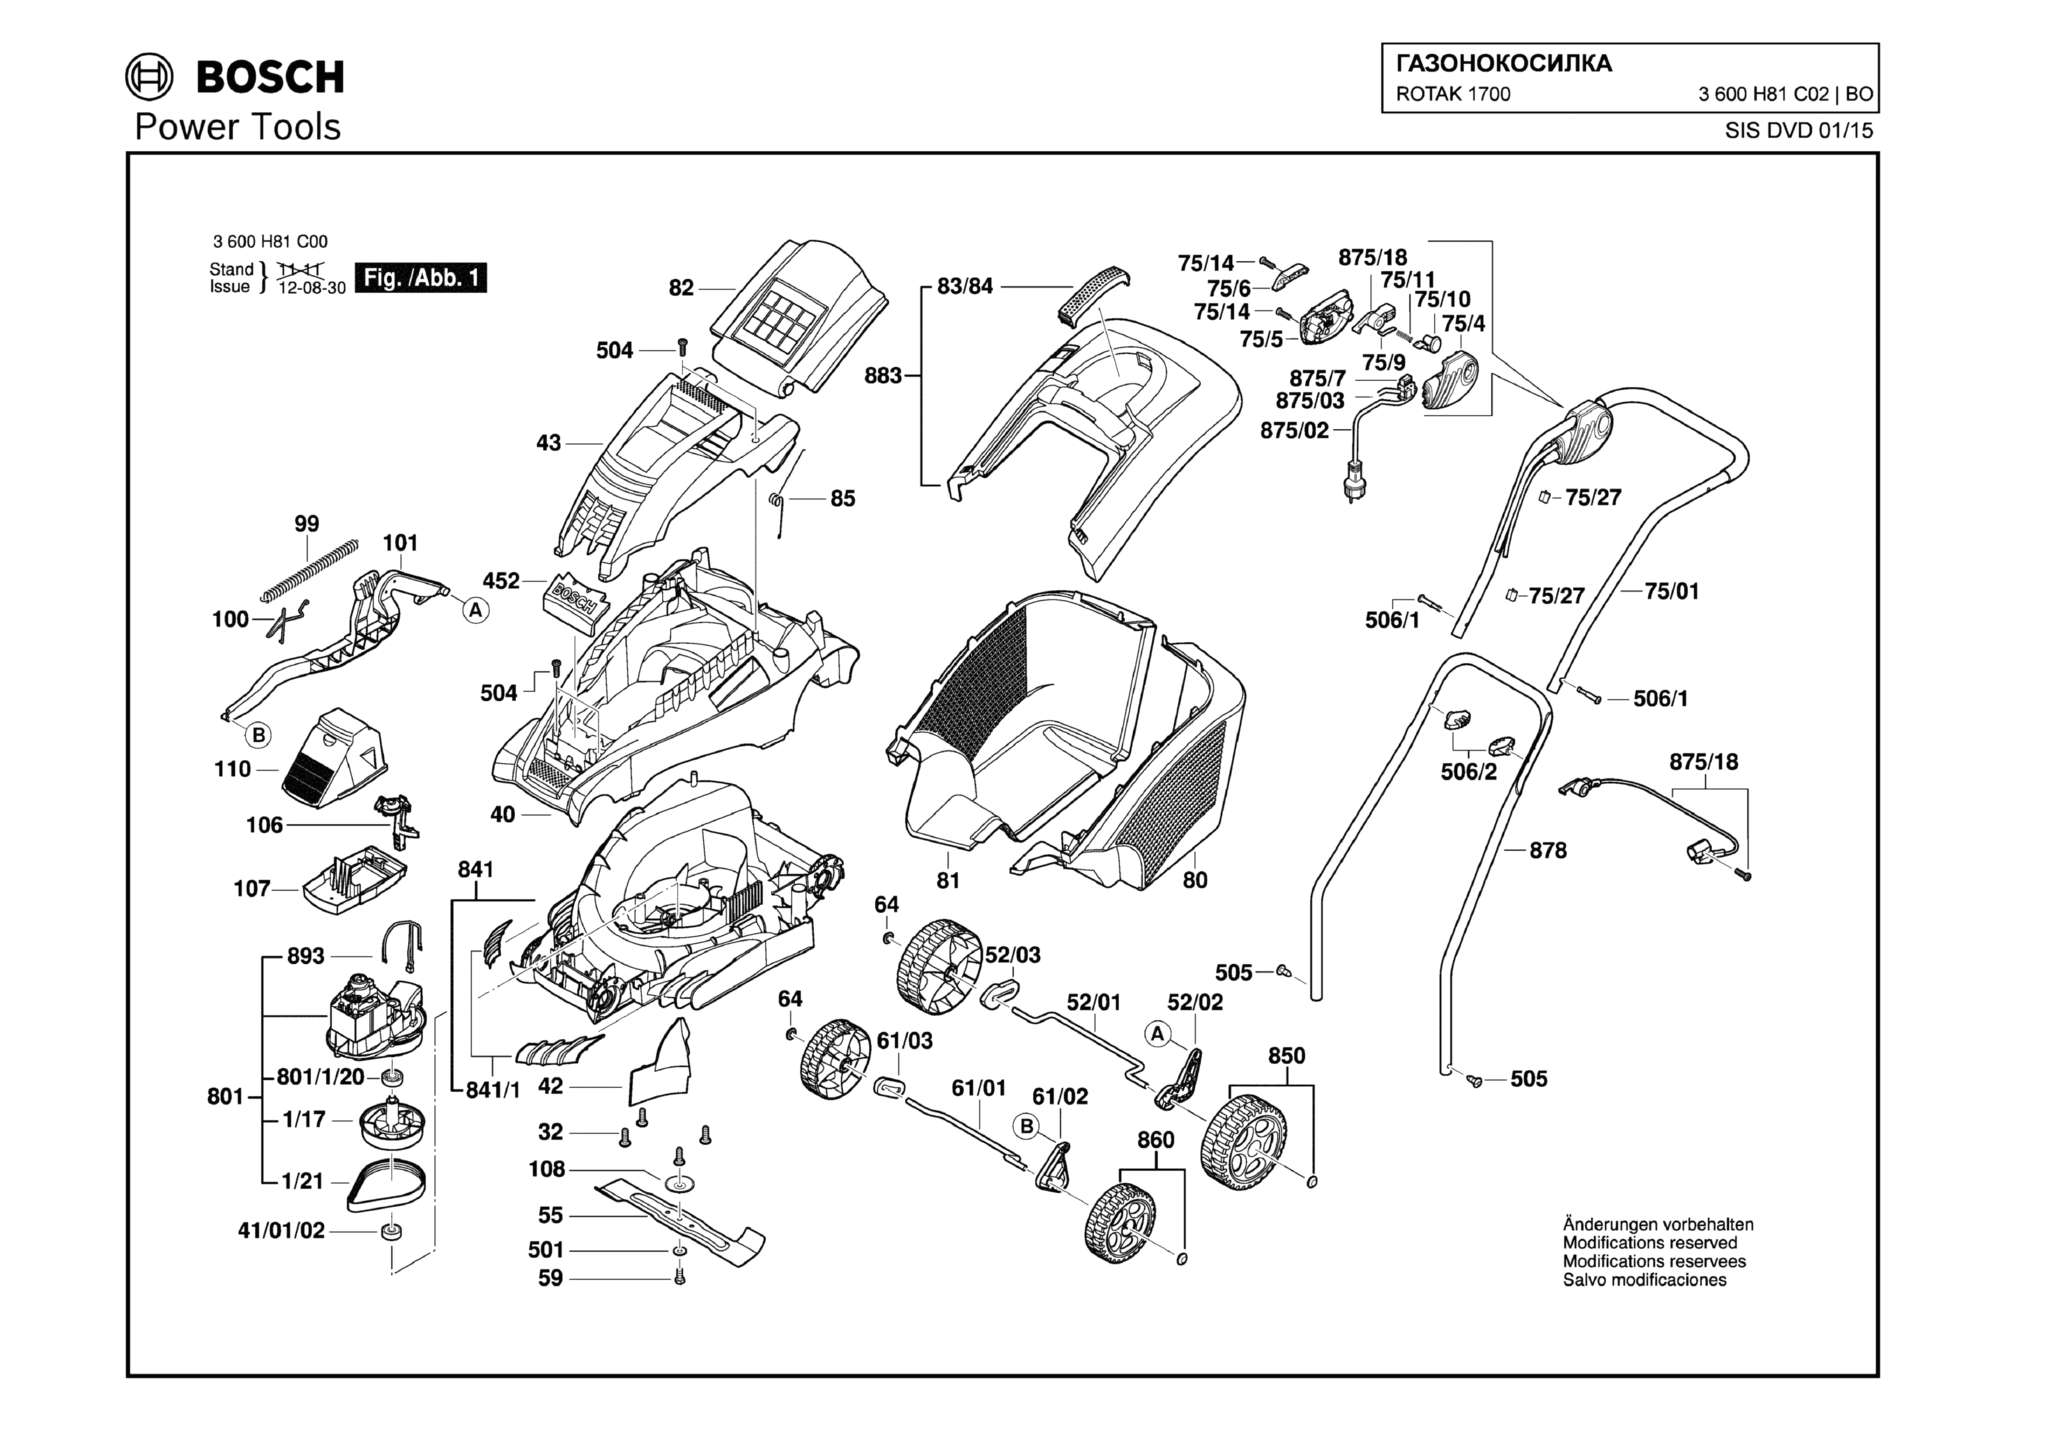 Запчасти, схема и деталировка Bosch ROTAK 1700 (ТИП 3600H81C02)